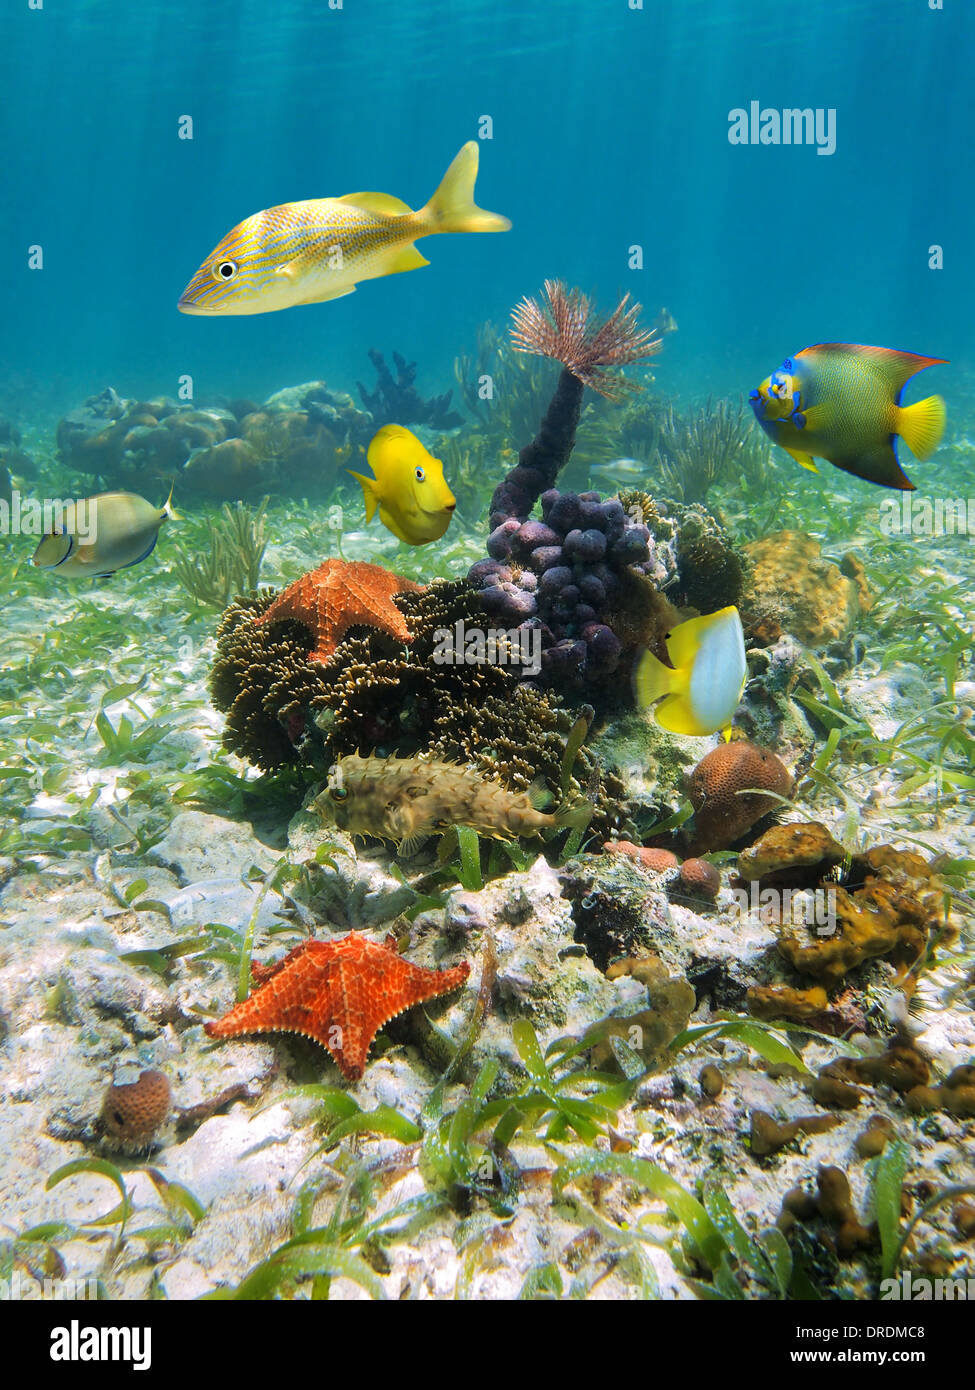 La vida submarina con coloridas estrellas de mar, peces, corales, esponjas y gusanos plumero, mar Caribe, Costa Rica Foto de stock